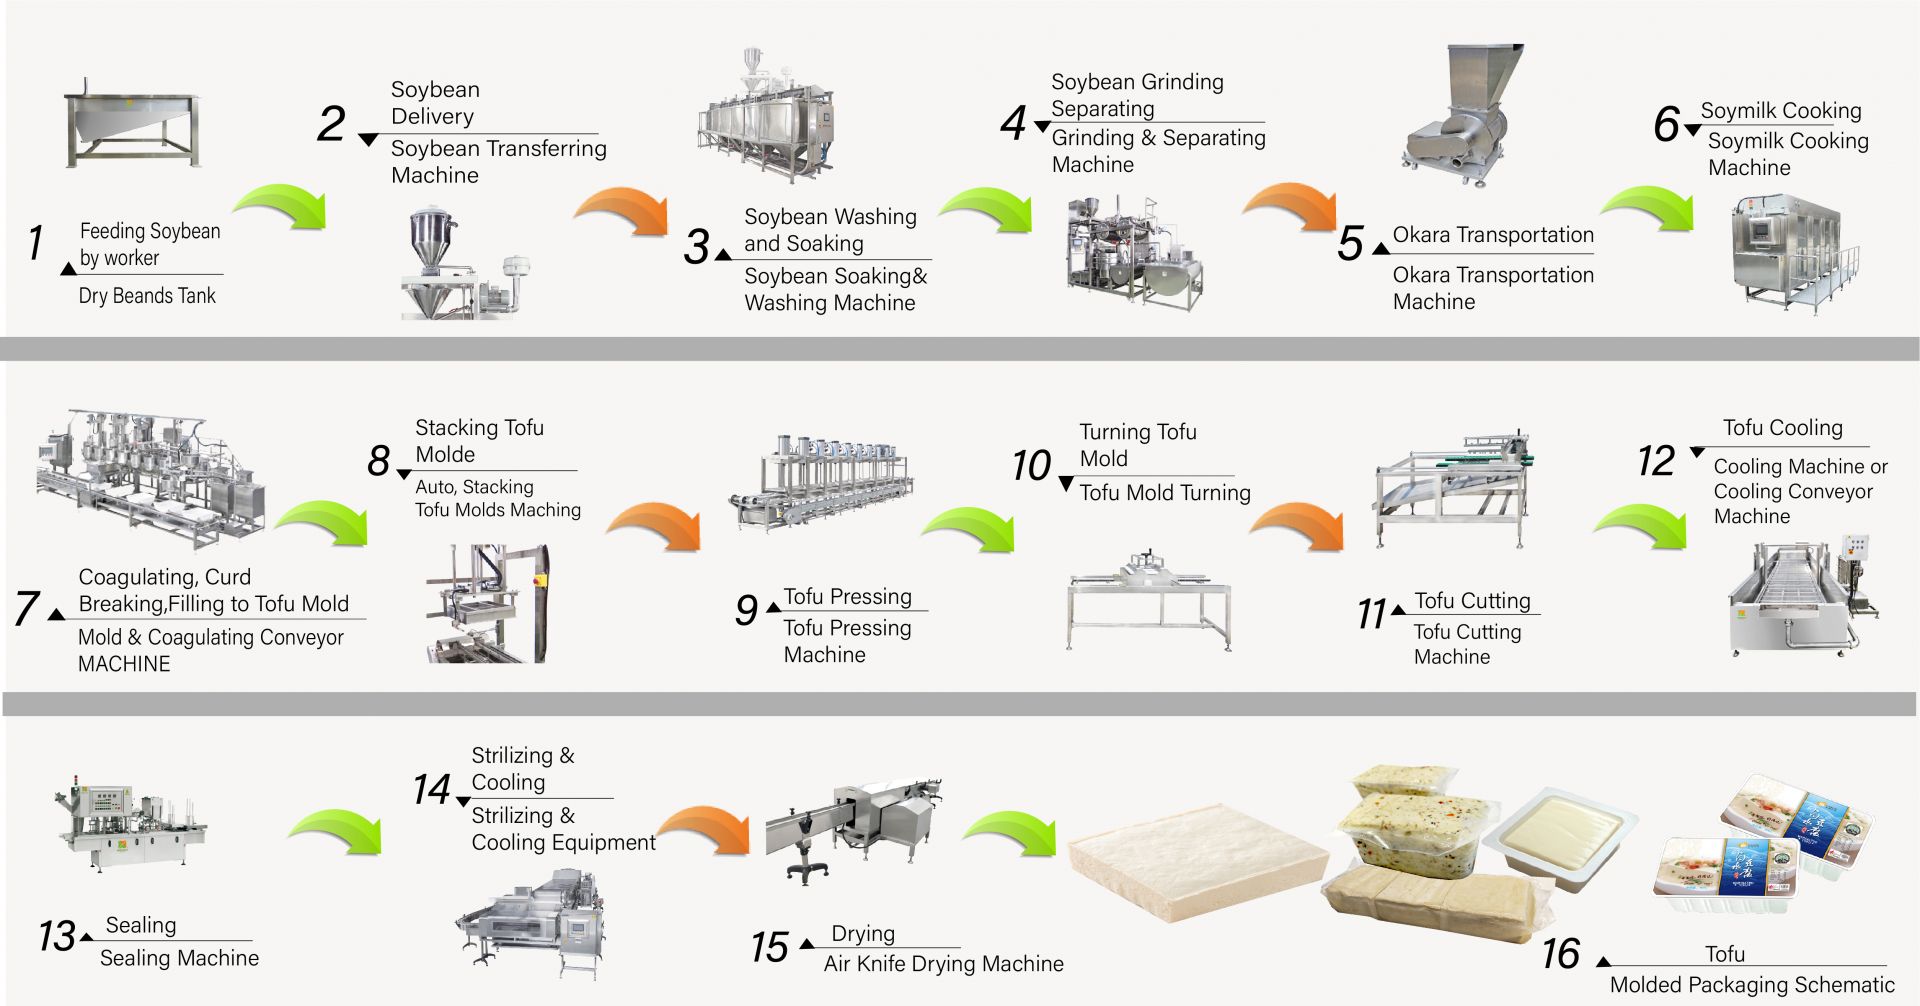 Hogyan készítsünk tofut, tofugyártás, Tofu készítése, Tofu készítési folyamat, tofugyártás, tofugyártási folyamat, tofu folyamat, tofufeldolgozási módszer, Tofu feldolgozási folyamat, tofugyártás, tofu gyártási folyamatábra, tofu gyártási folyamat, Tofu gyártási folyamat, automatikus tofu gép, Automatikus tofu készítő gép, Kereskedelmi tofu gép, Egyszerű Tofu Készítő, Sült Tofu Gép, Ipari tofu gyártás, Szója élelmiszer berendezés, szójahús gép, szójatej és tofu készítő gép, tofu felszerelés, tofu gyár, tofu gép, tofu gép eladó, tofu gépgyártó, tofu gépgyártó, tofu gép ára, Tofu gépek, Tofu gépek és berendezések, Tofu készítő, tofu készítő gép, Tofu készítés, tofu készítő berendezések, tofu készítő gép, tofu készítő gép ára, tofu gyártók, Tofu gyártás, tofu gyártási berendezések, Tofu gyártó üzem, tofu gyártó üzem, Tofu gyártó berendezések, Tofu gyártó üzem, tofu gyártósor, Tofu gyártósor ár, tofukészítő, Vegán húsgép, Vegán hús gyártósor, Zöldséges tofu gépek és berendezések